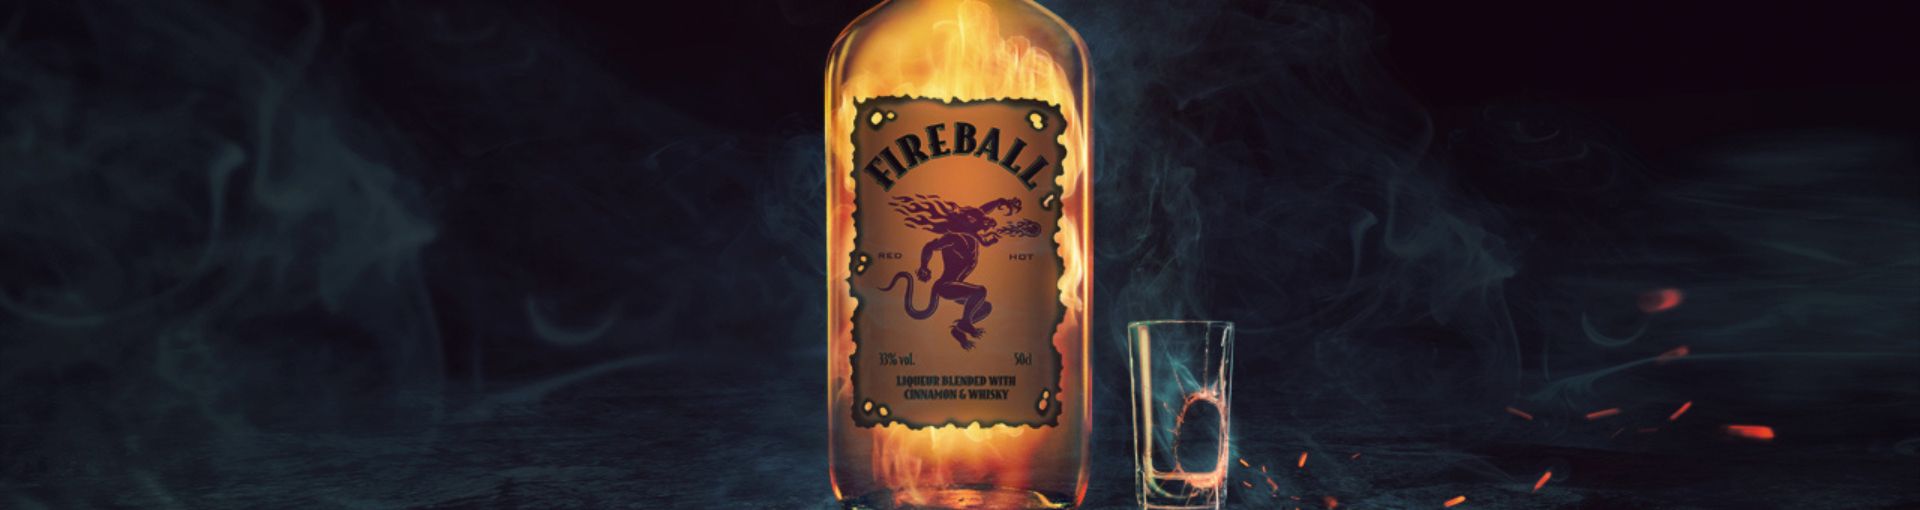 Fireball Whiskey Flasche in der Mitte des Bildes, daneben ein zerbrochenes Shotglas und leichter Rauch auf dem gesamten Bild